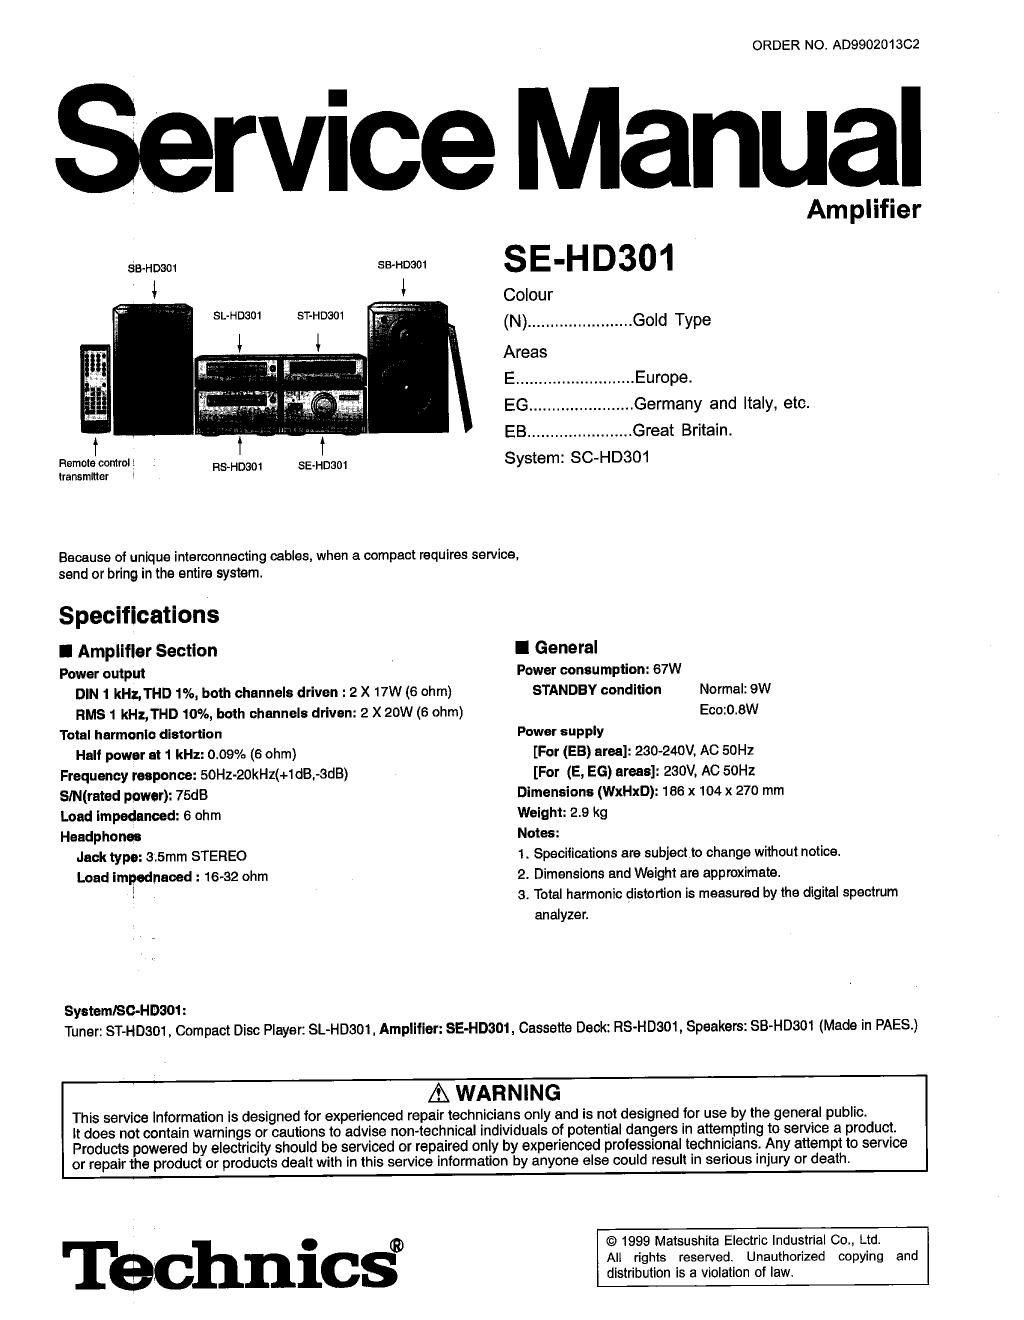 panasonic se hd 301 service manual